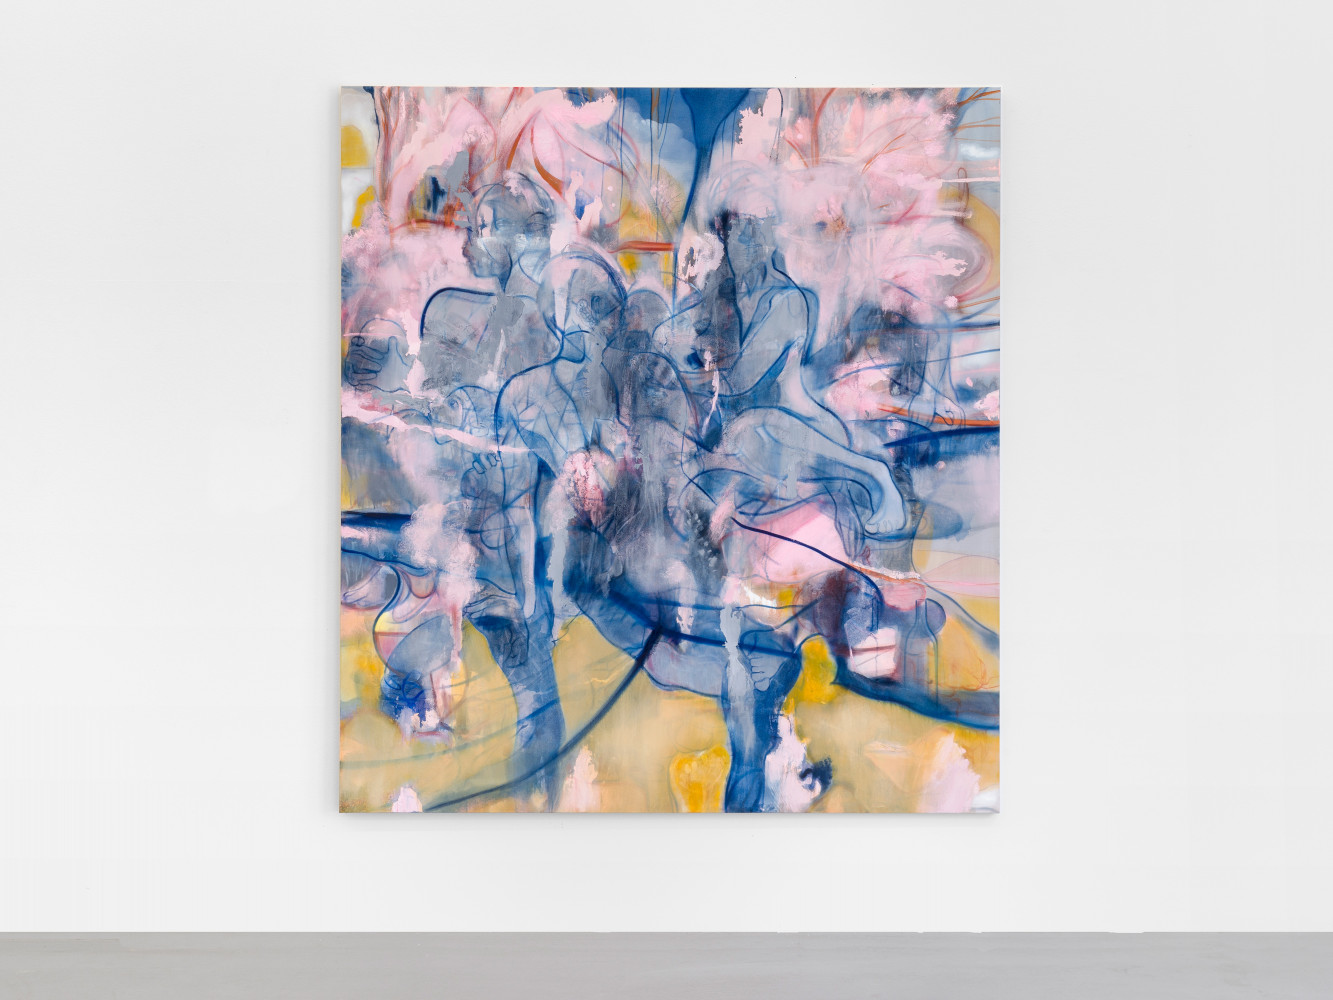 Nigel Cooke, ‘Blossom Shade’, 2019, Oil on linen